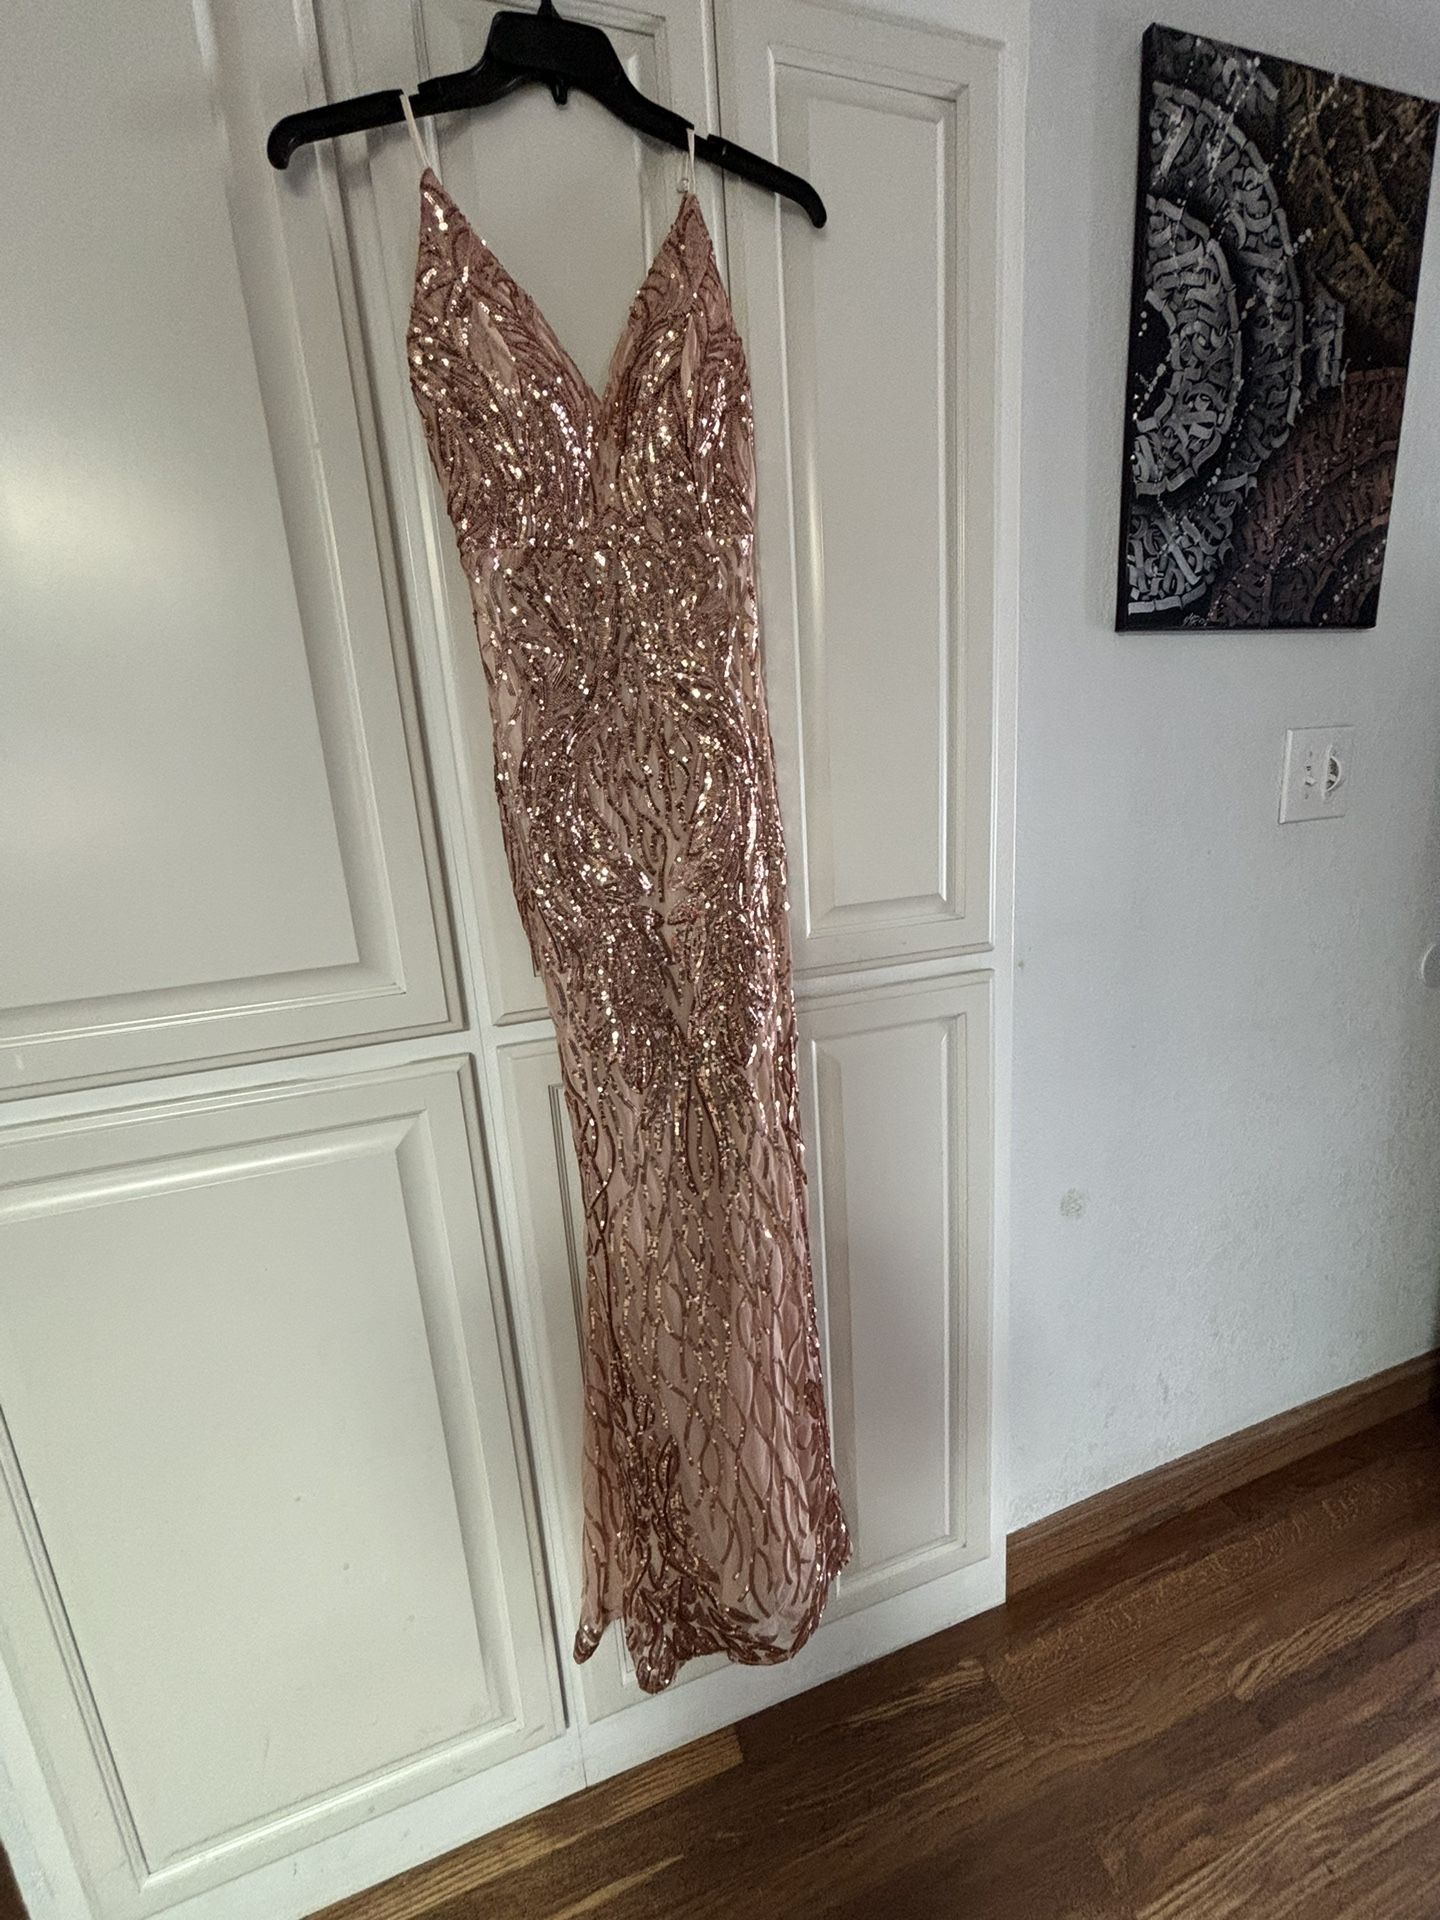 LUXEDO Formal Prom Dress